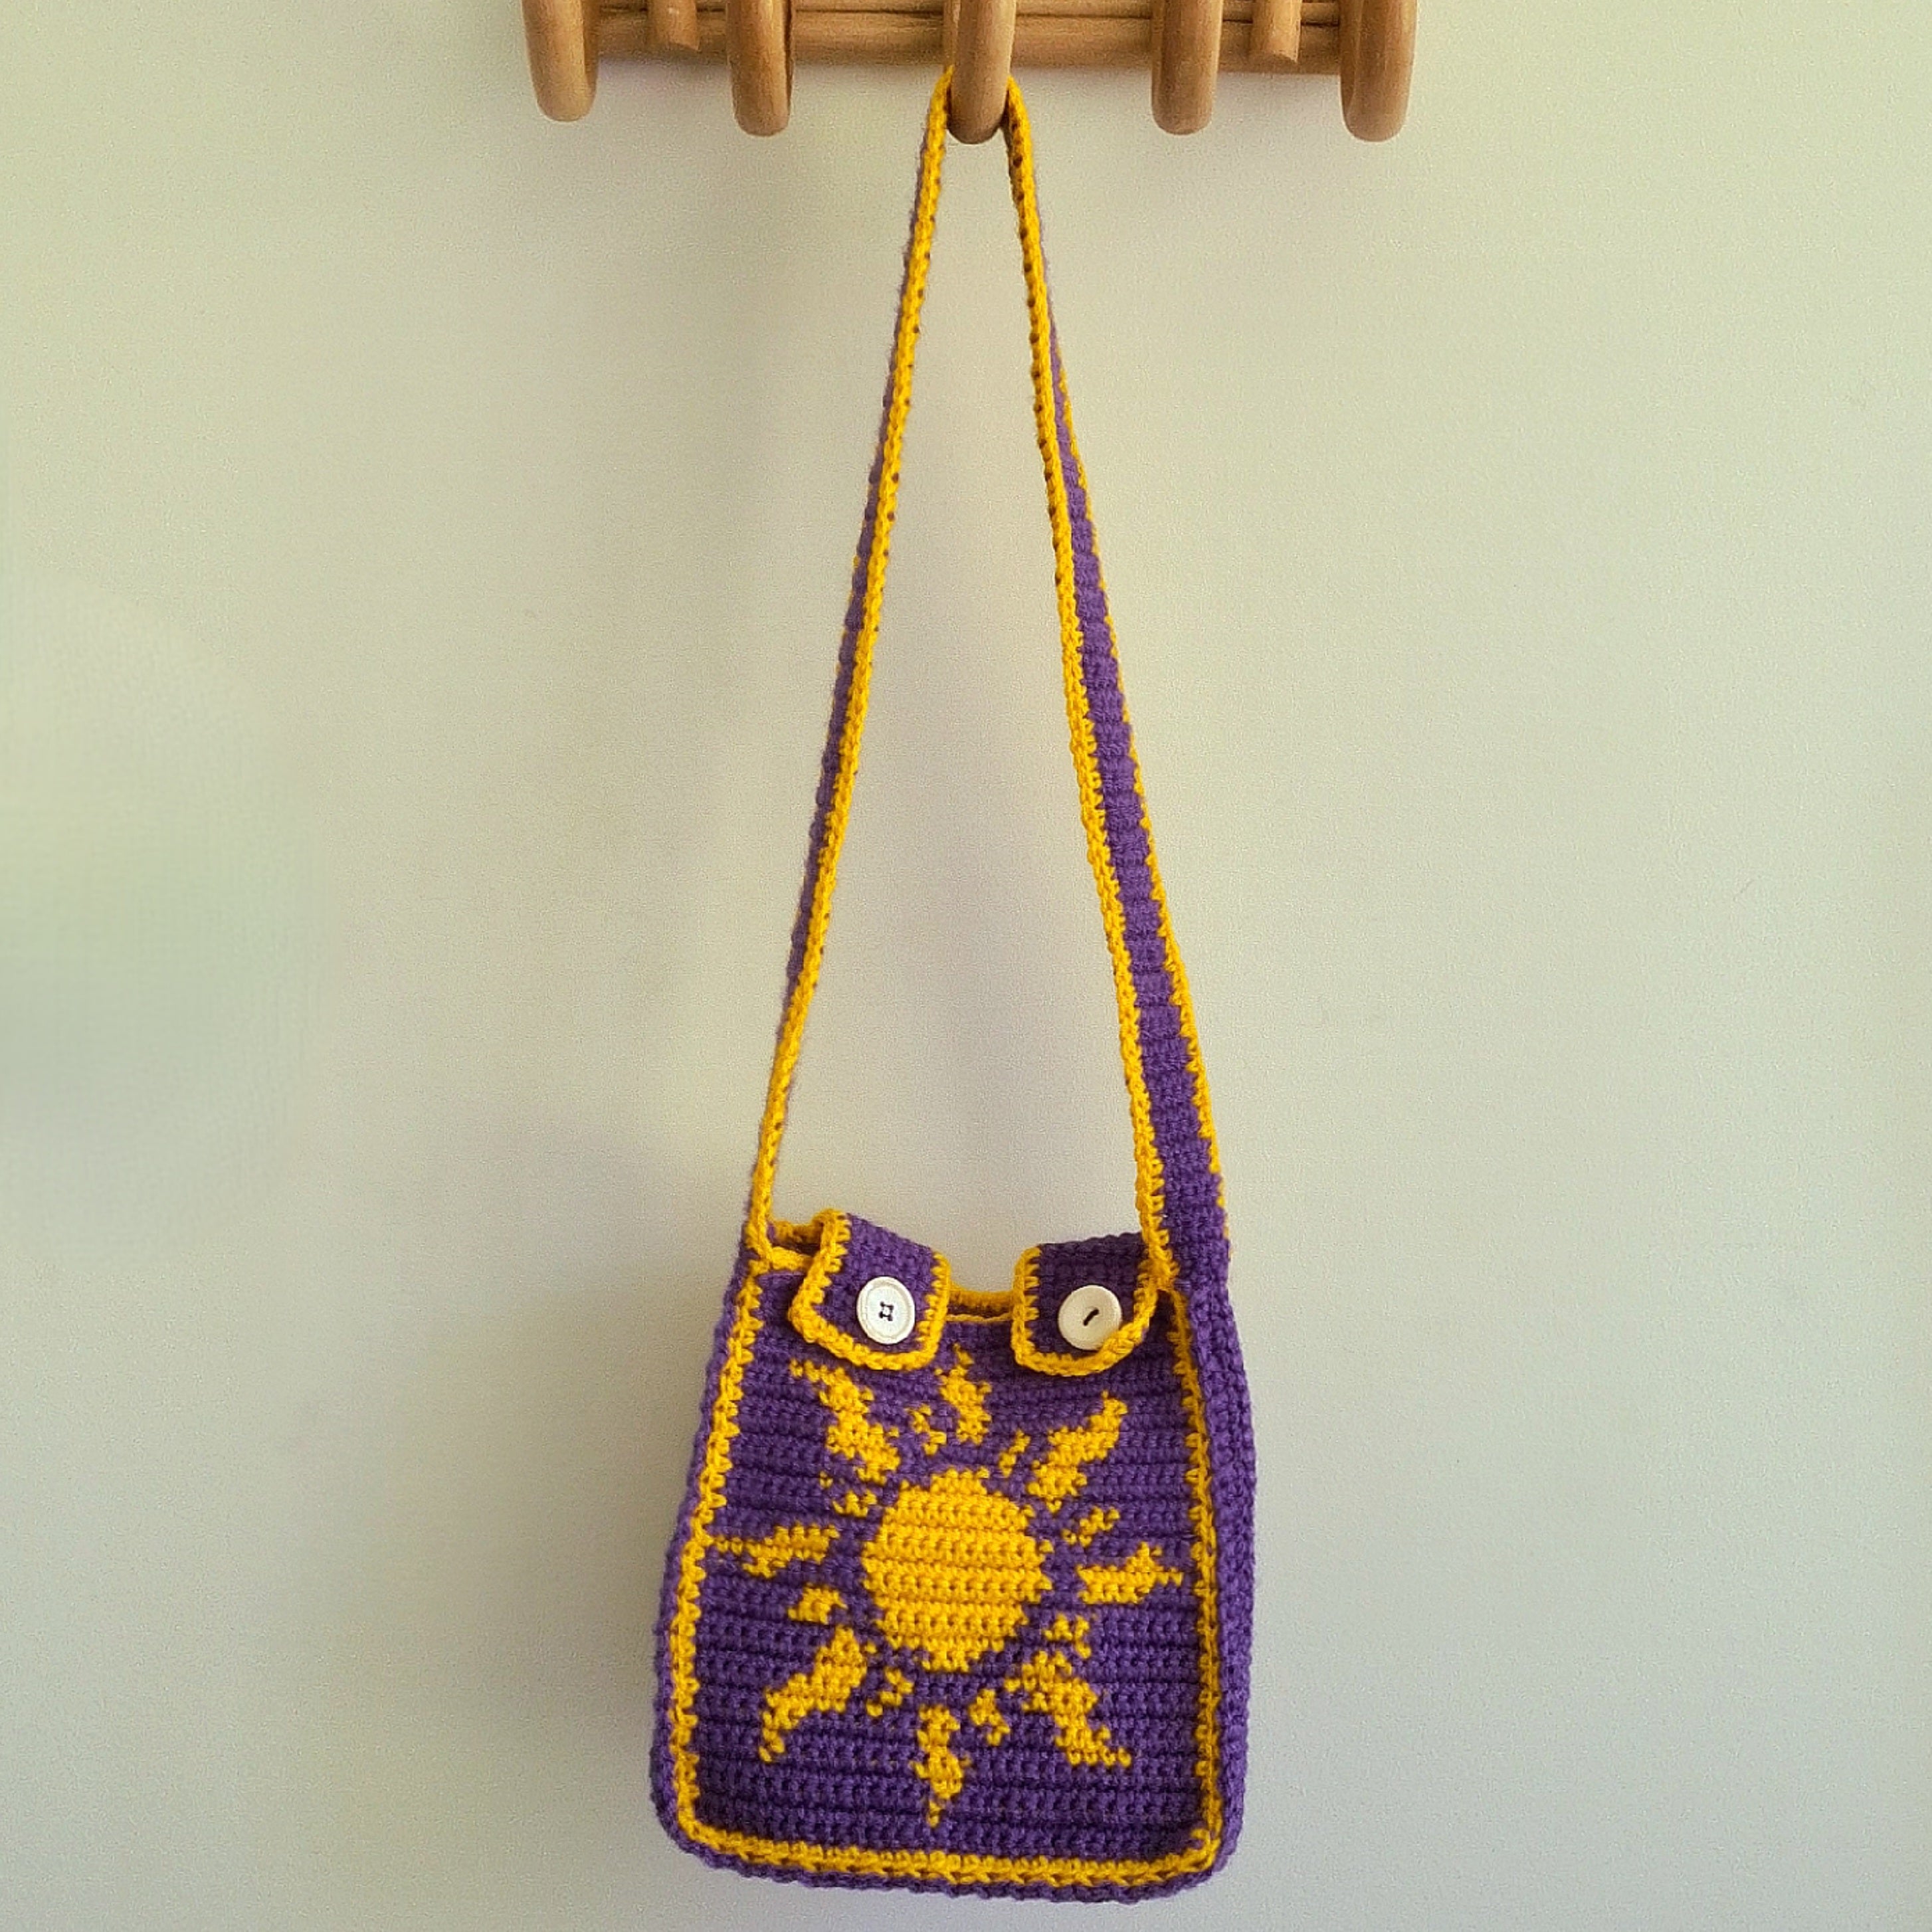 Buy Crochet Bag / Granny Square Bag / Handmade Crochet Knitted Strawberry  Tote Bag/ Christmas Gift / Cute Crochet Shoulder Bag / Gift for Her Online  in India - Etsy